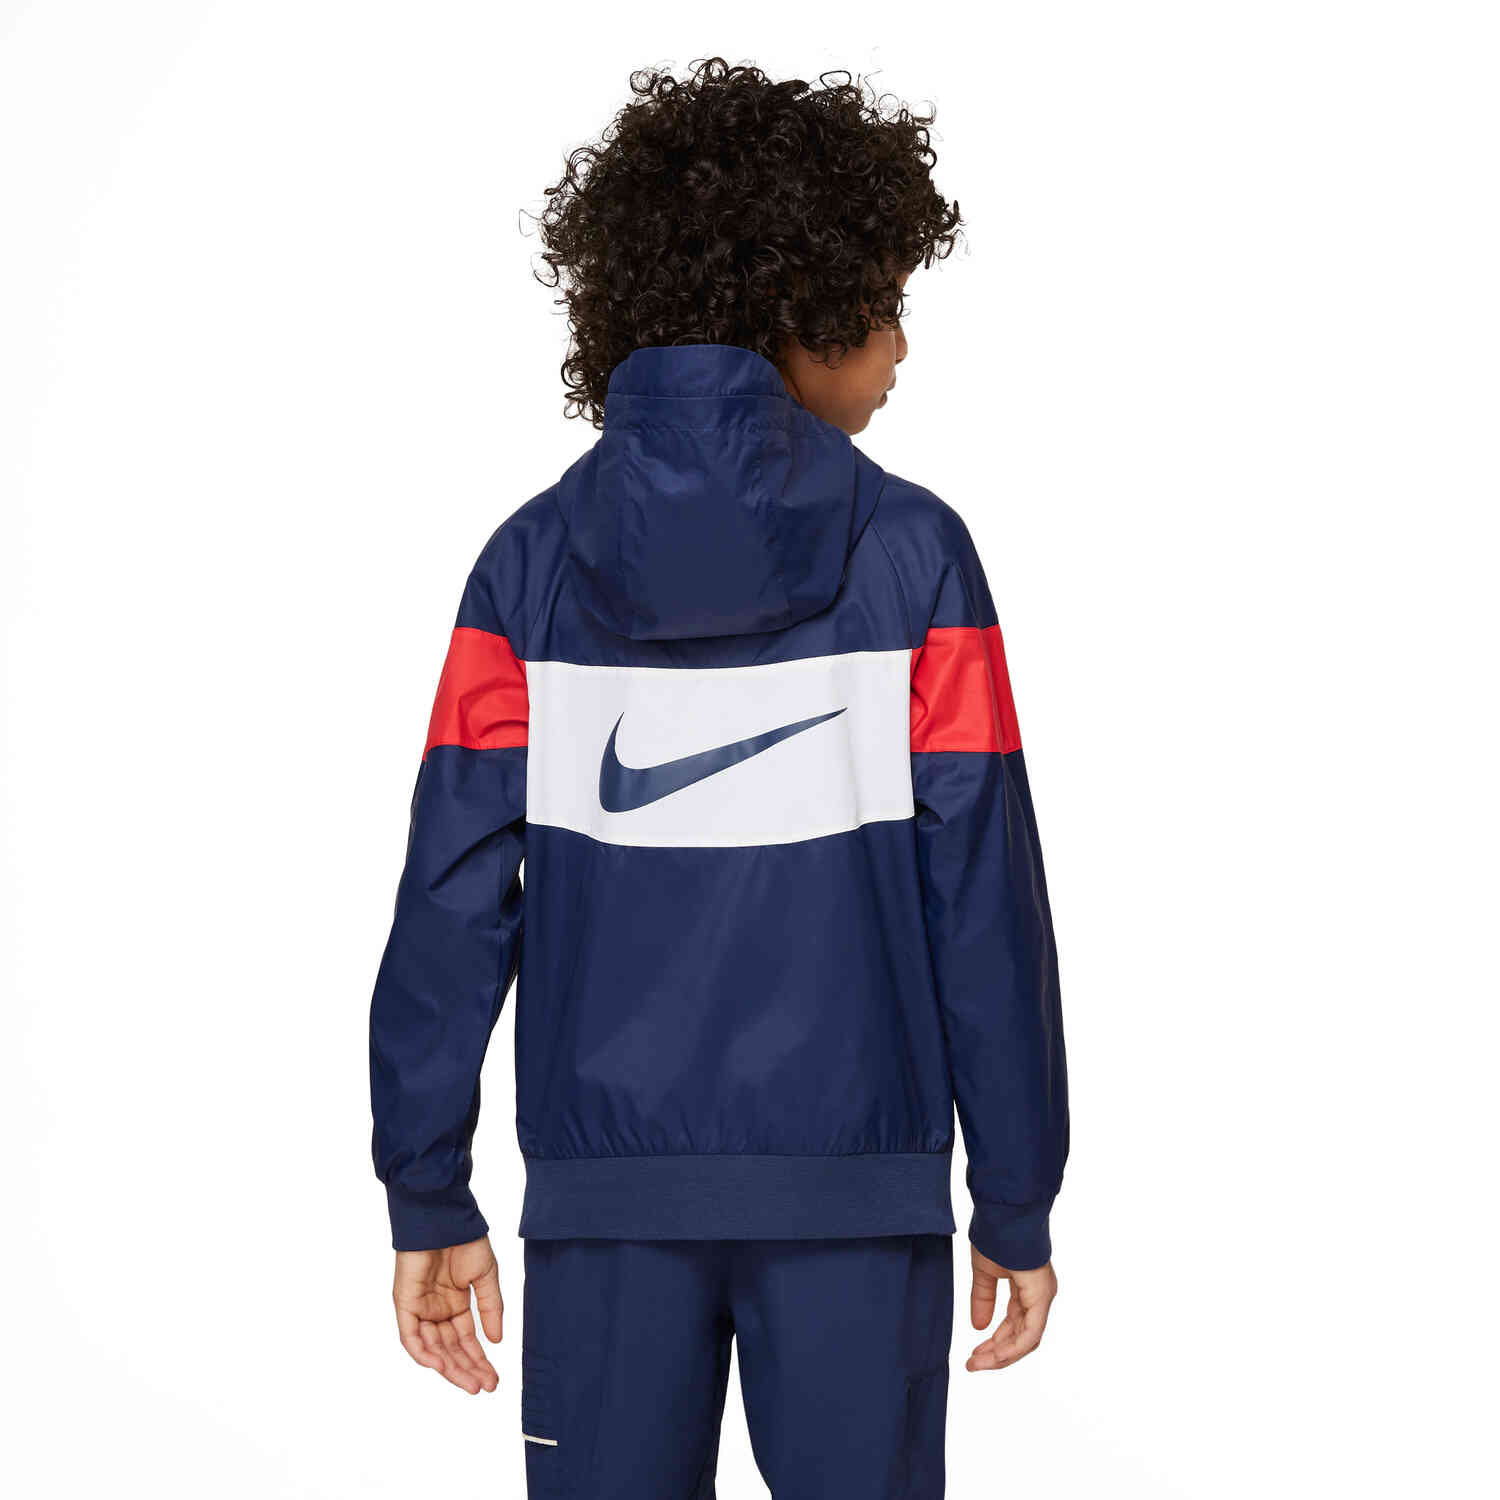 Kids Nike PSG Anthem Jacket - Midnight Navy/White/University Red/White -  SoccerPro